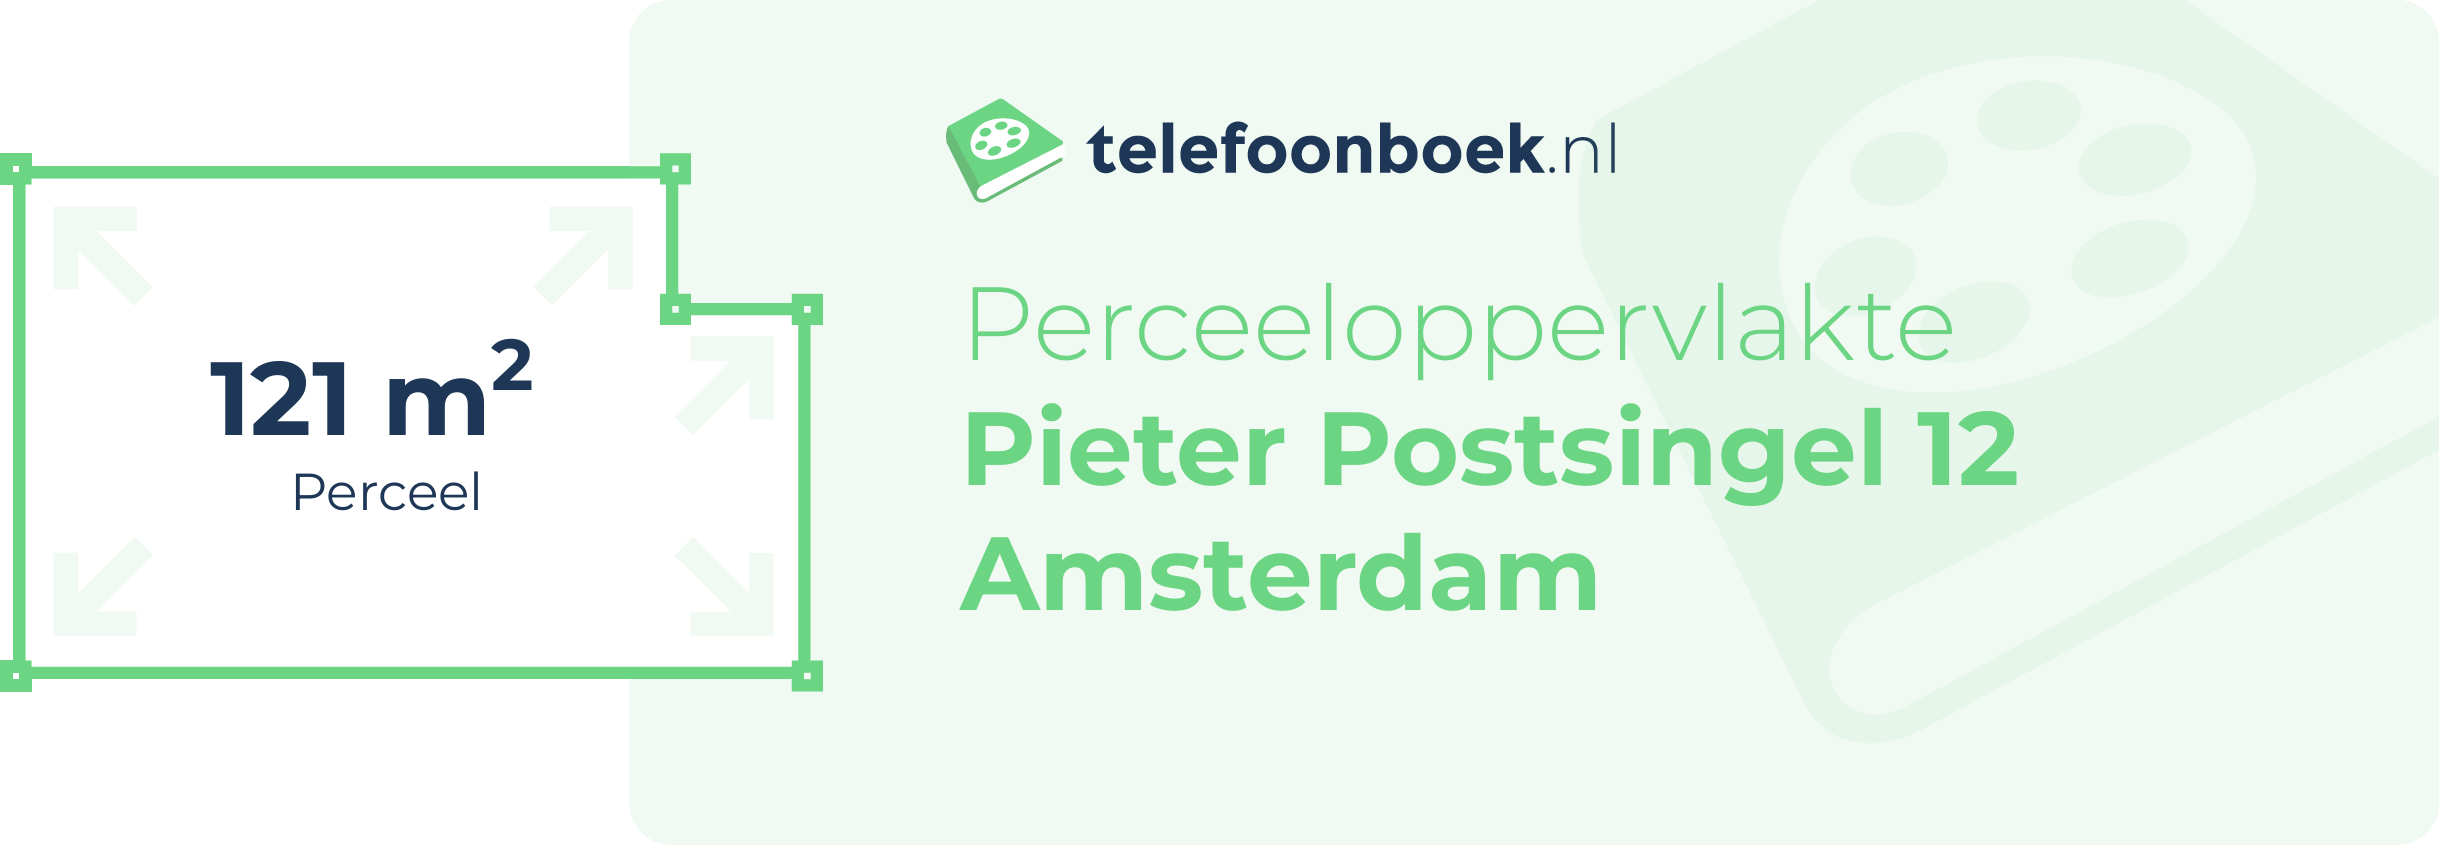 Perceeloppervlakte Pieter Postsingel 12 Amsterdam